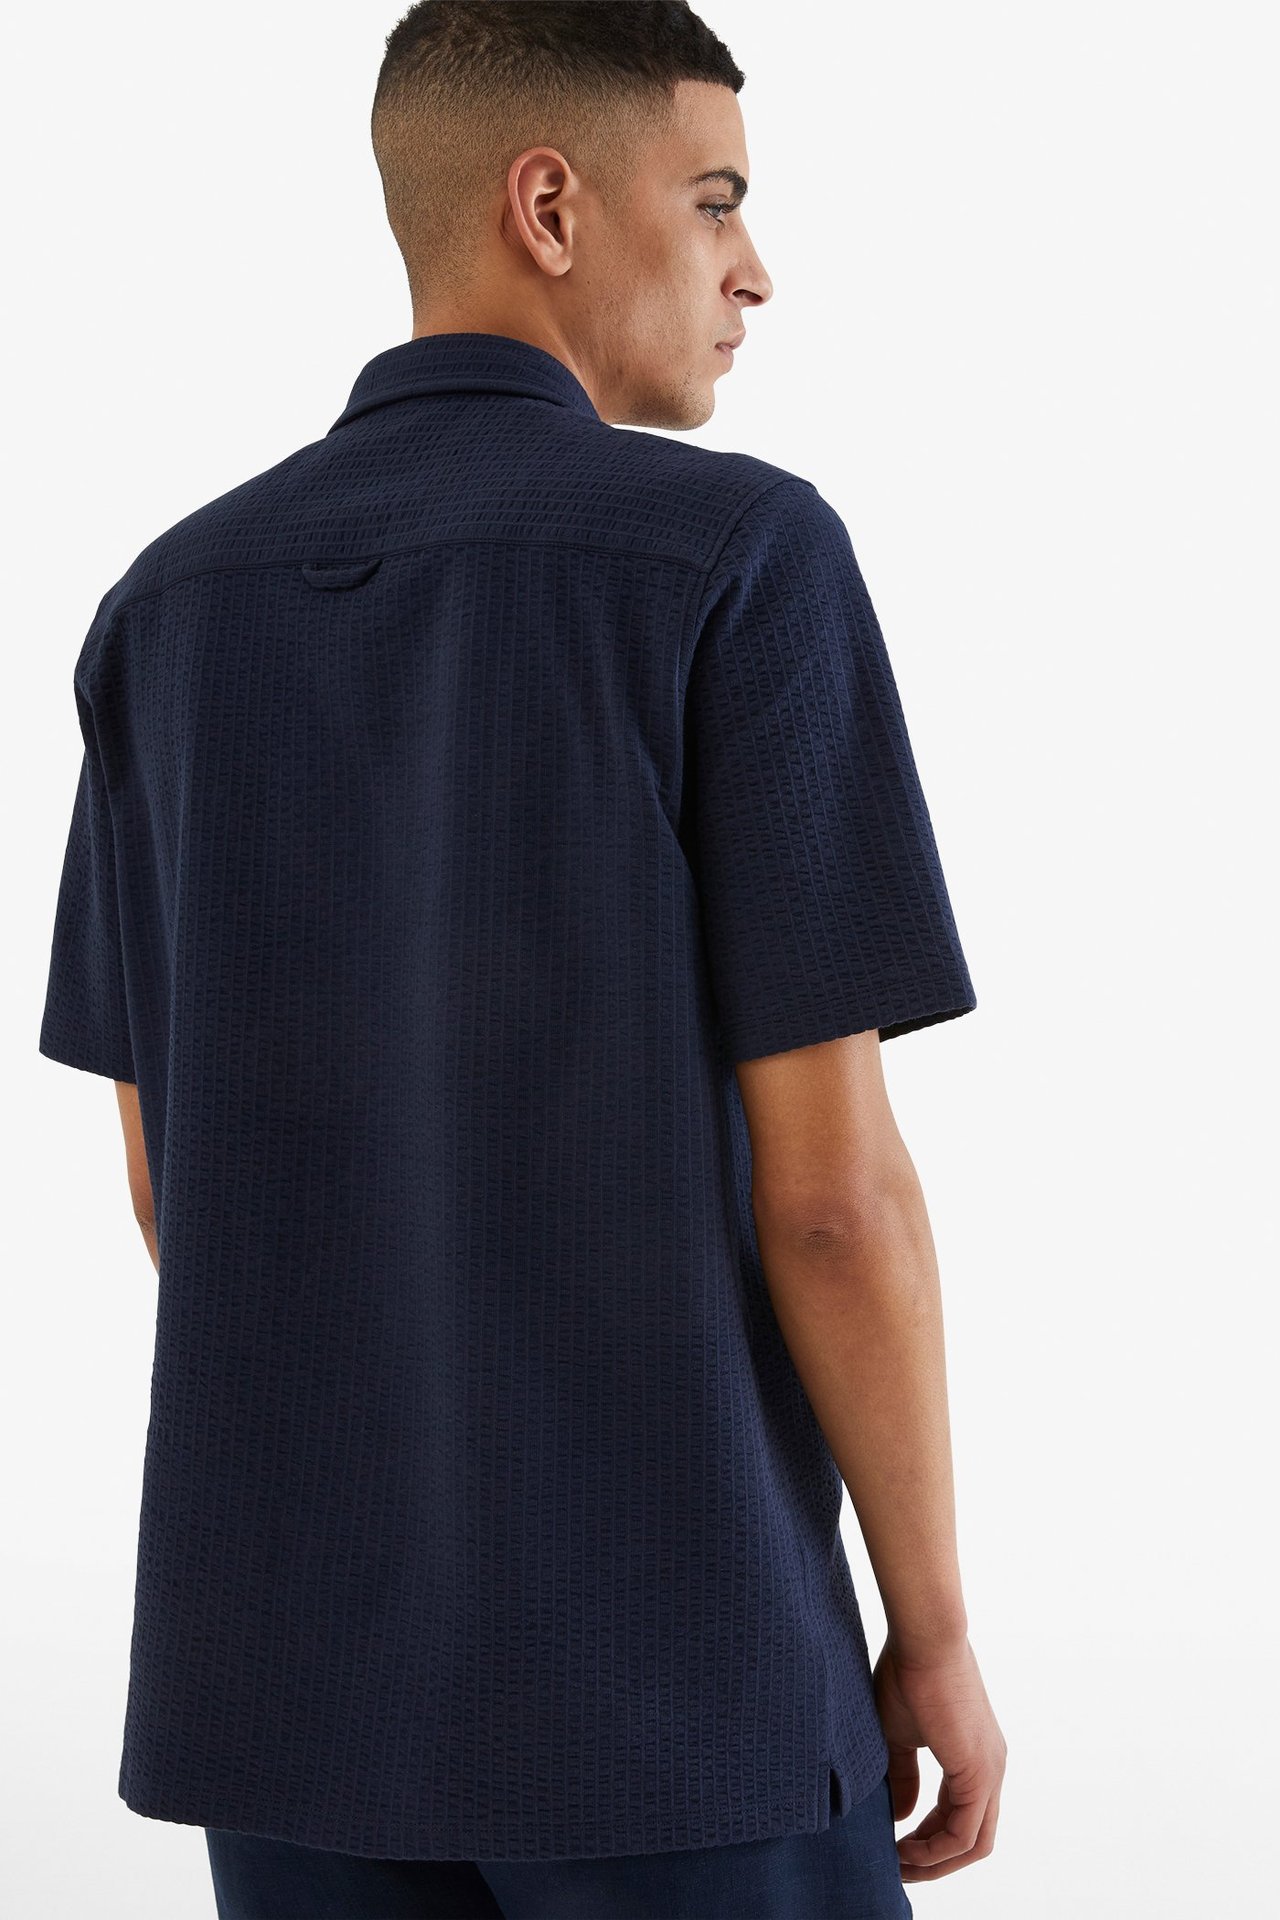 Tennisskjorte i trikot Mørkeblå - null - 2